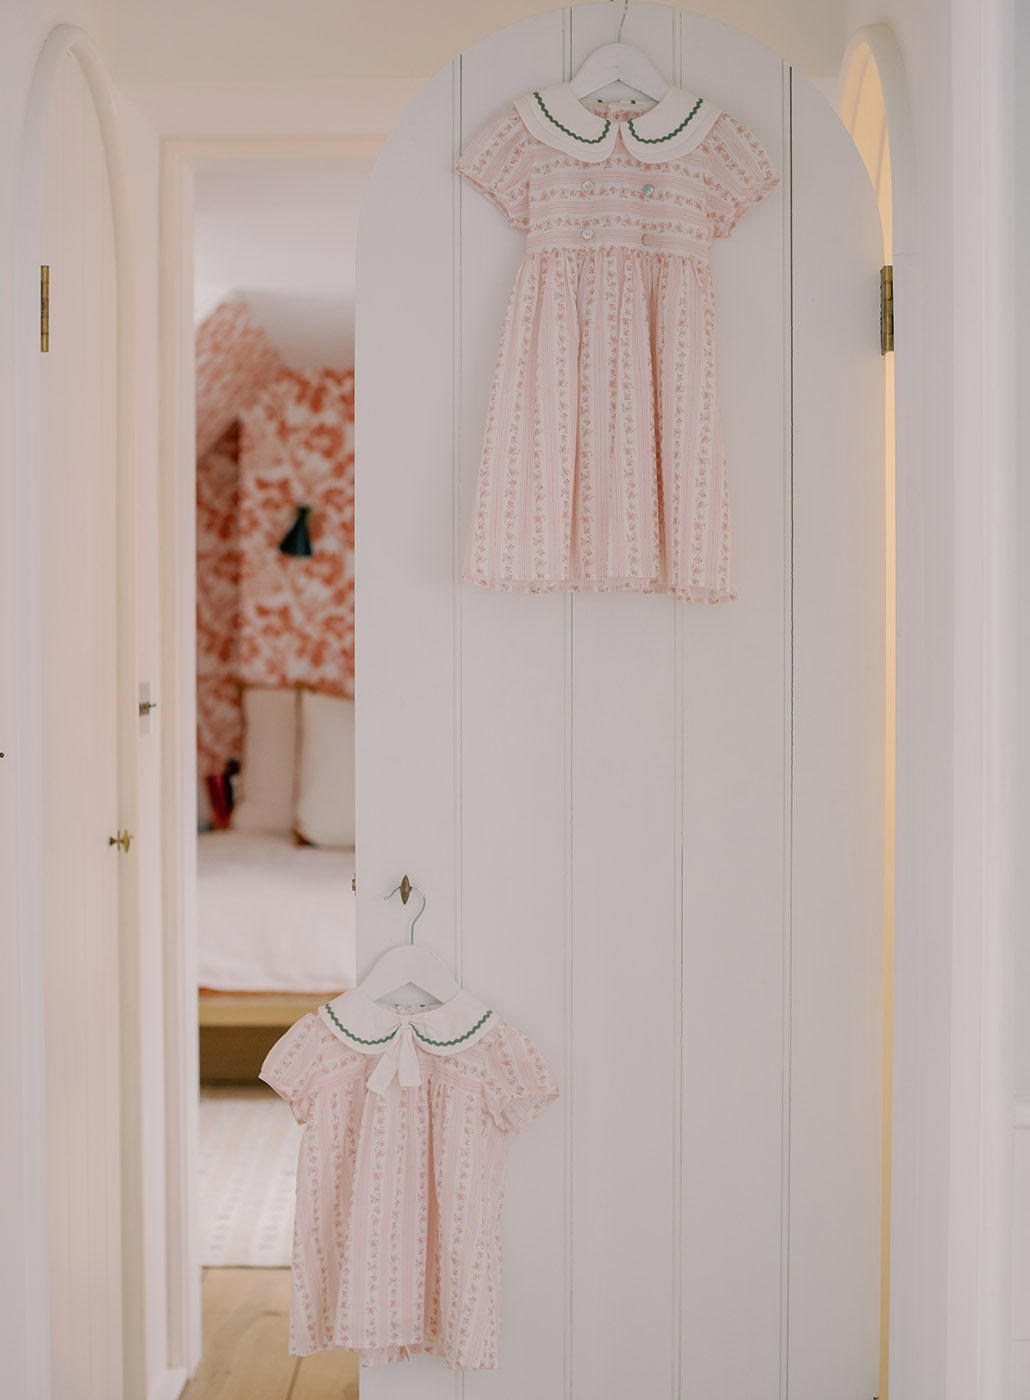 H&M rose gold leggings, Babies & Kids, Babies & Kids Fashion on Carousell